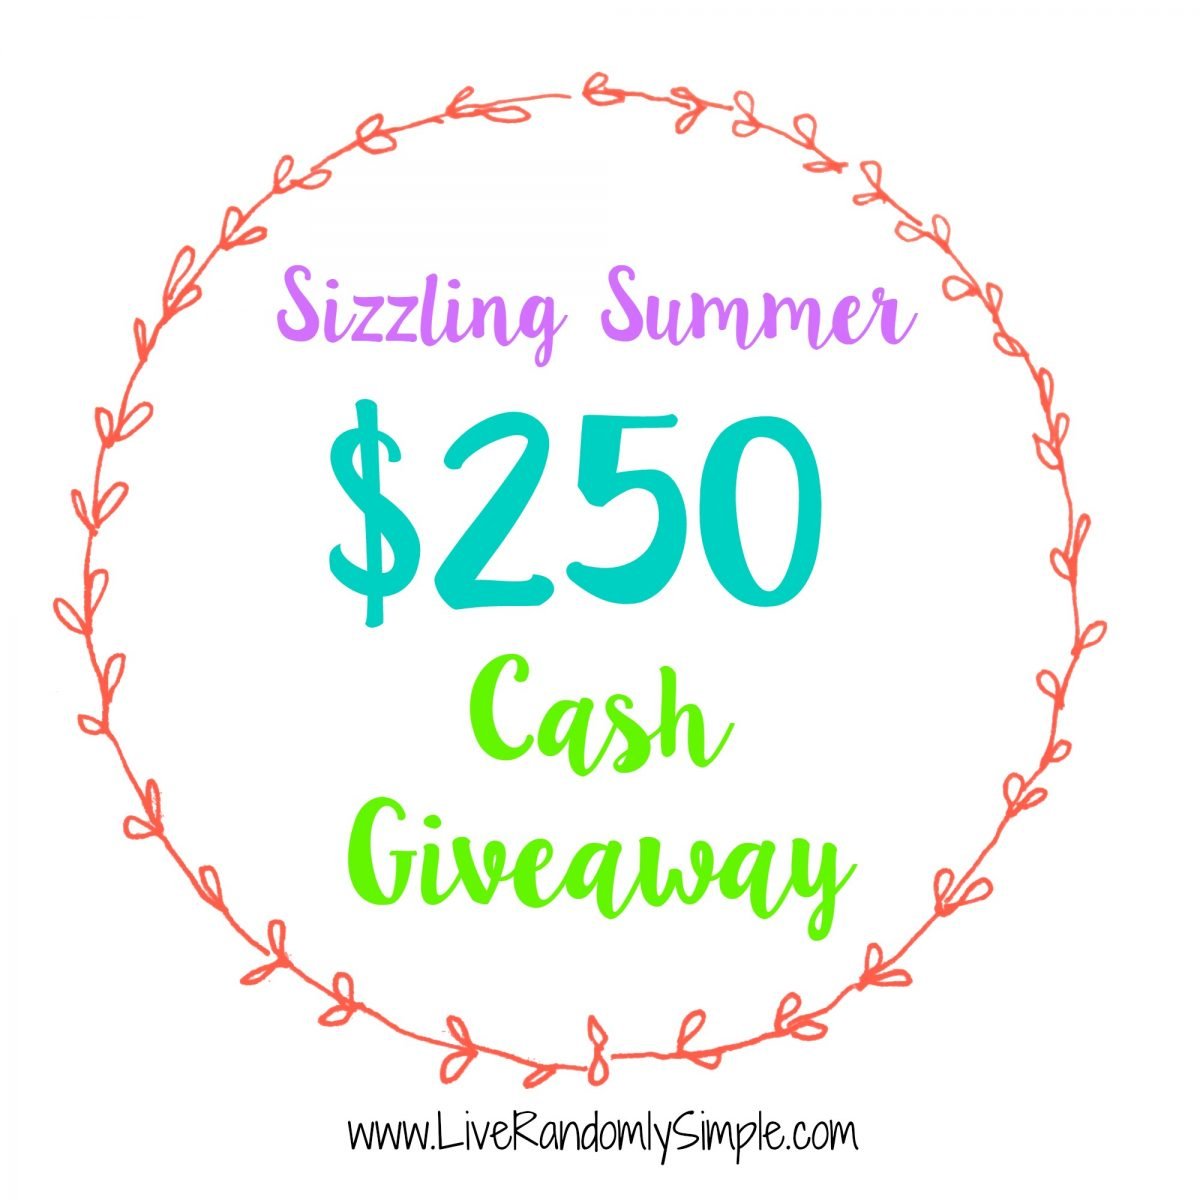 Sizzling Summer $250 Cash Giveaway at Sparkles of Sunshine!